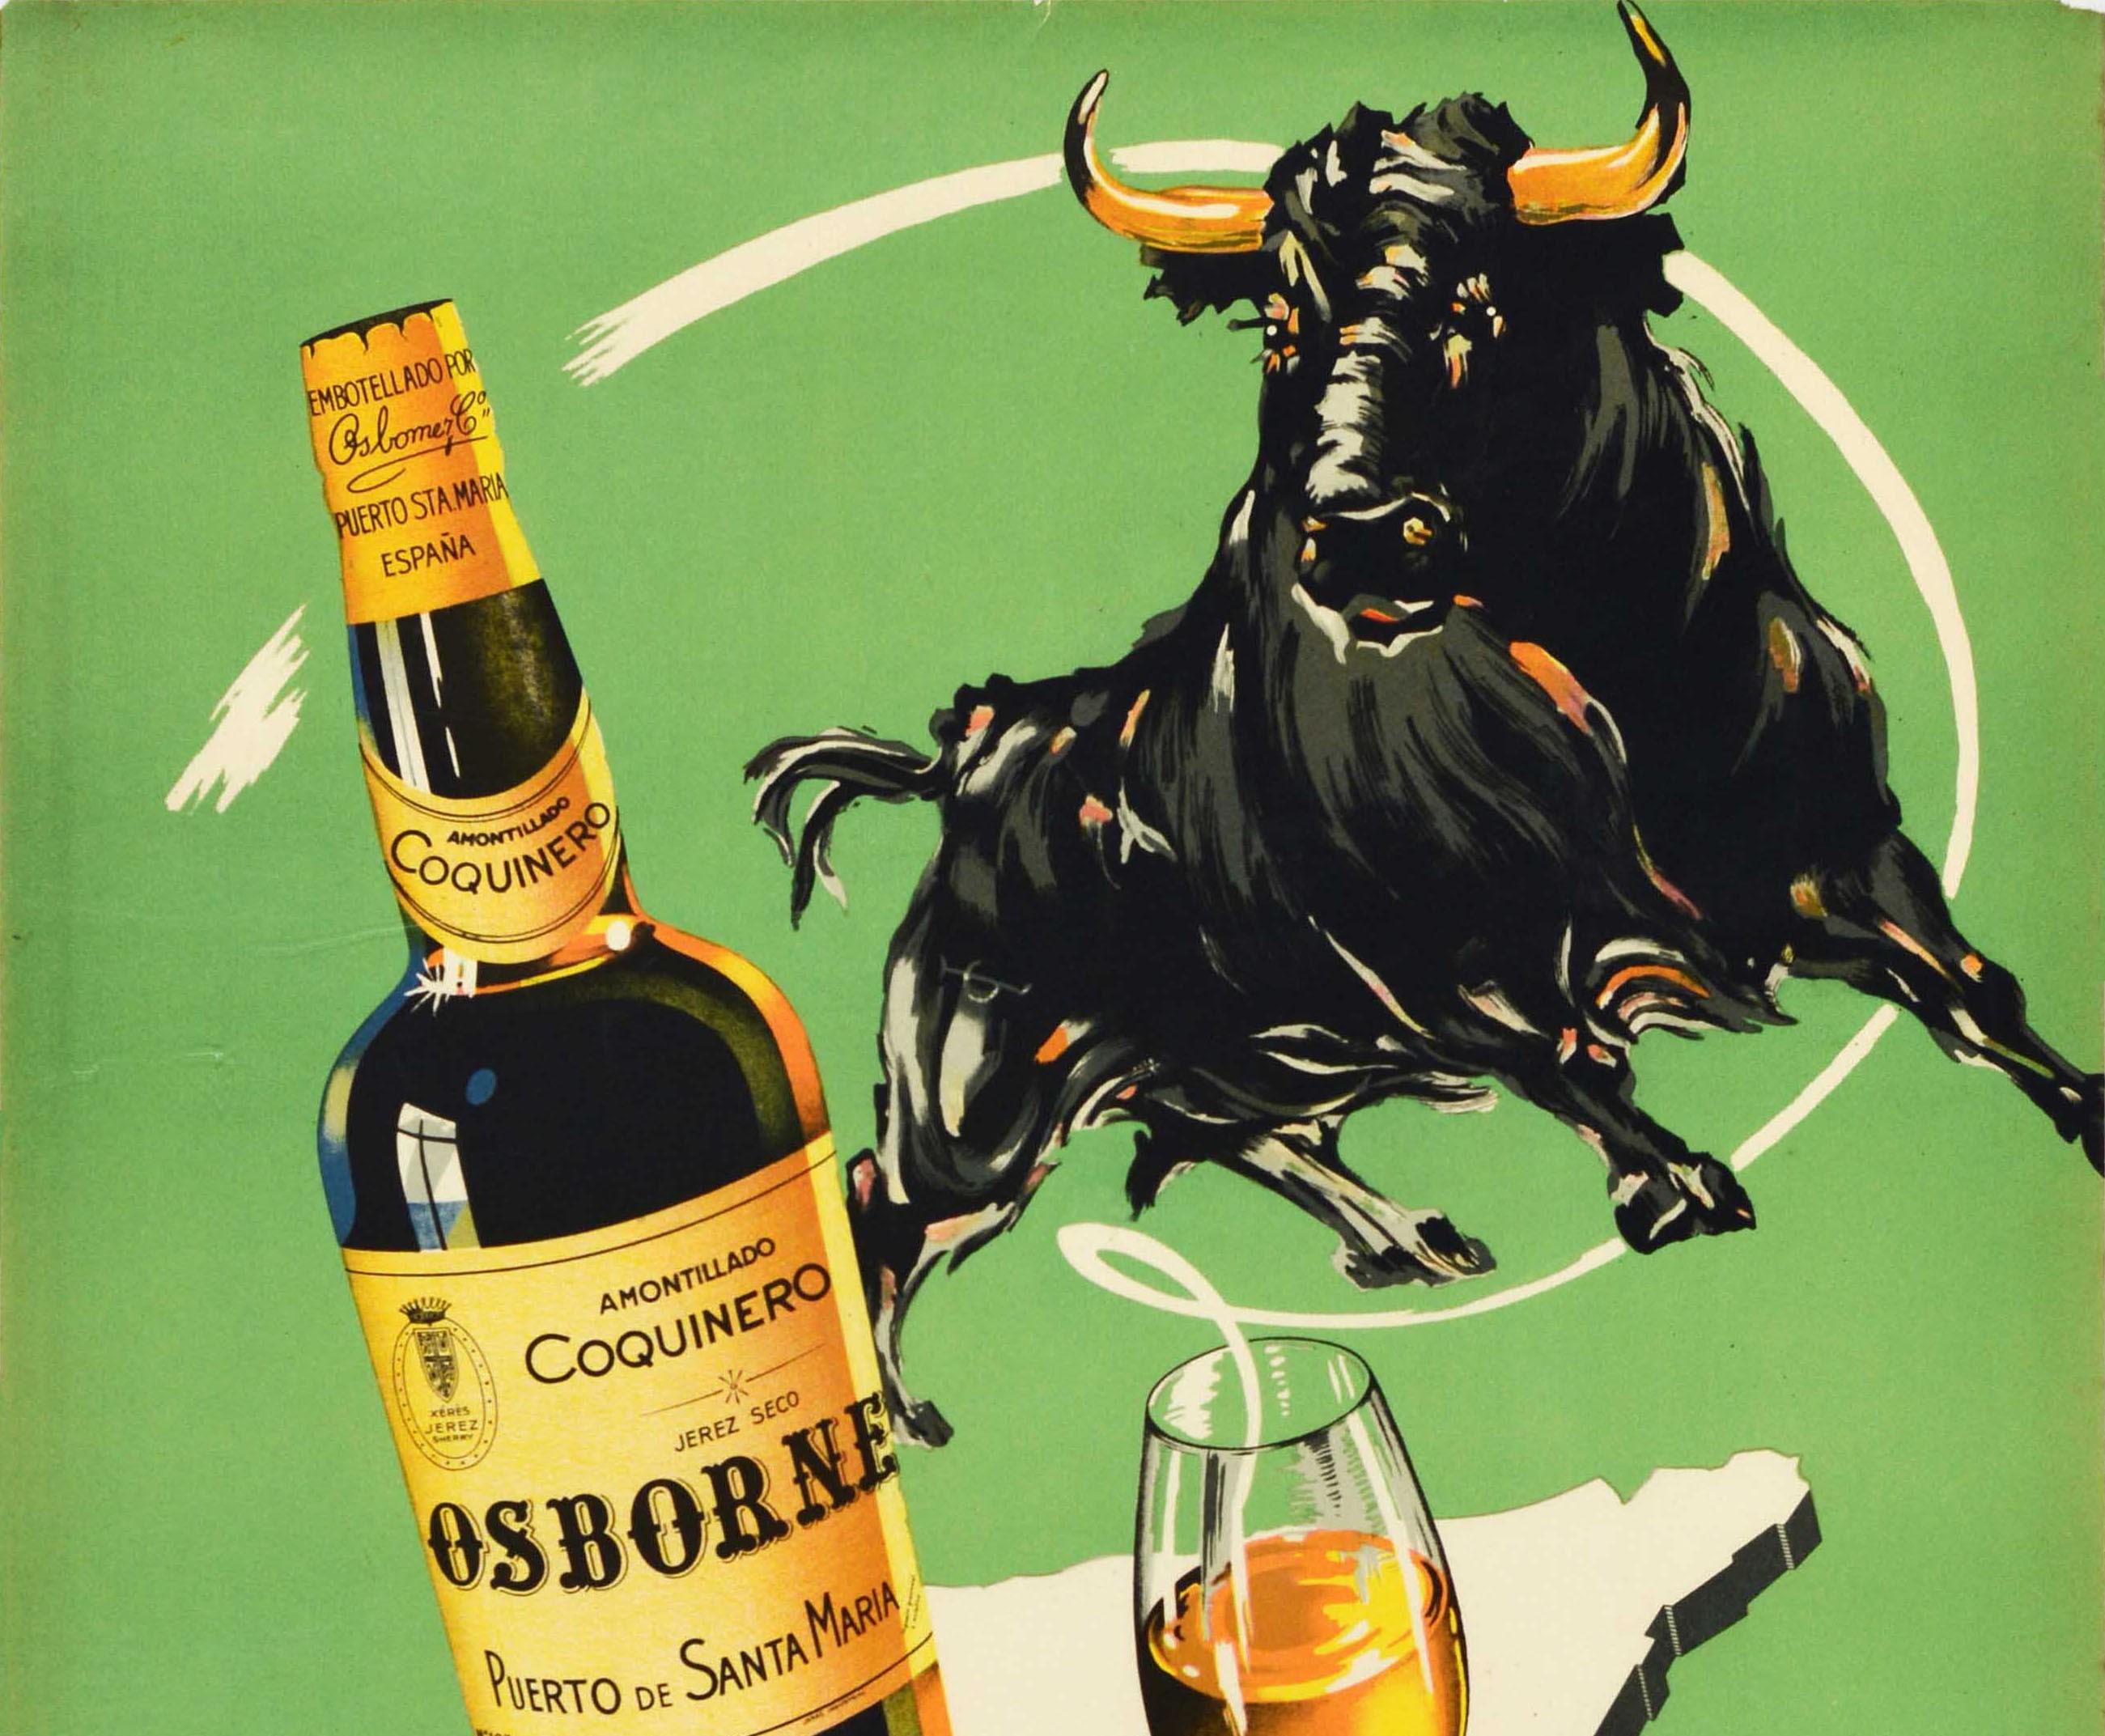 Affiche publicitaire vintage originale pour le sherry Amontillado Coquinero Osborne / Xeres / Jerez Puerto de Santa Maria Espana. Le design représente un taureau au-dessus d'une bouteille de sherry à côté d'un verre sur une carte d'Espagne avec le